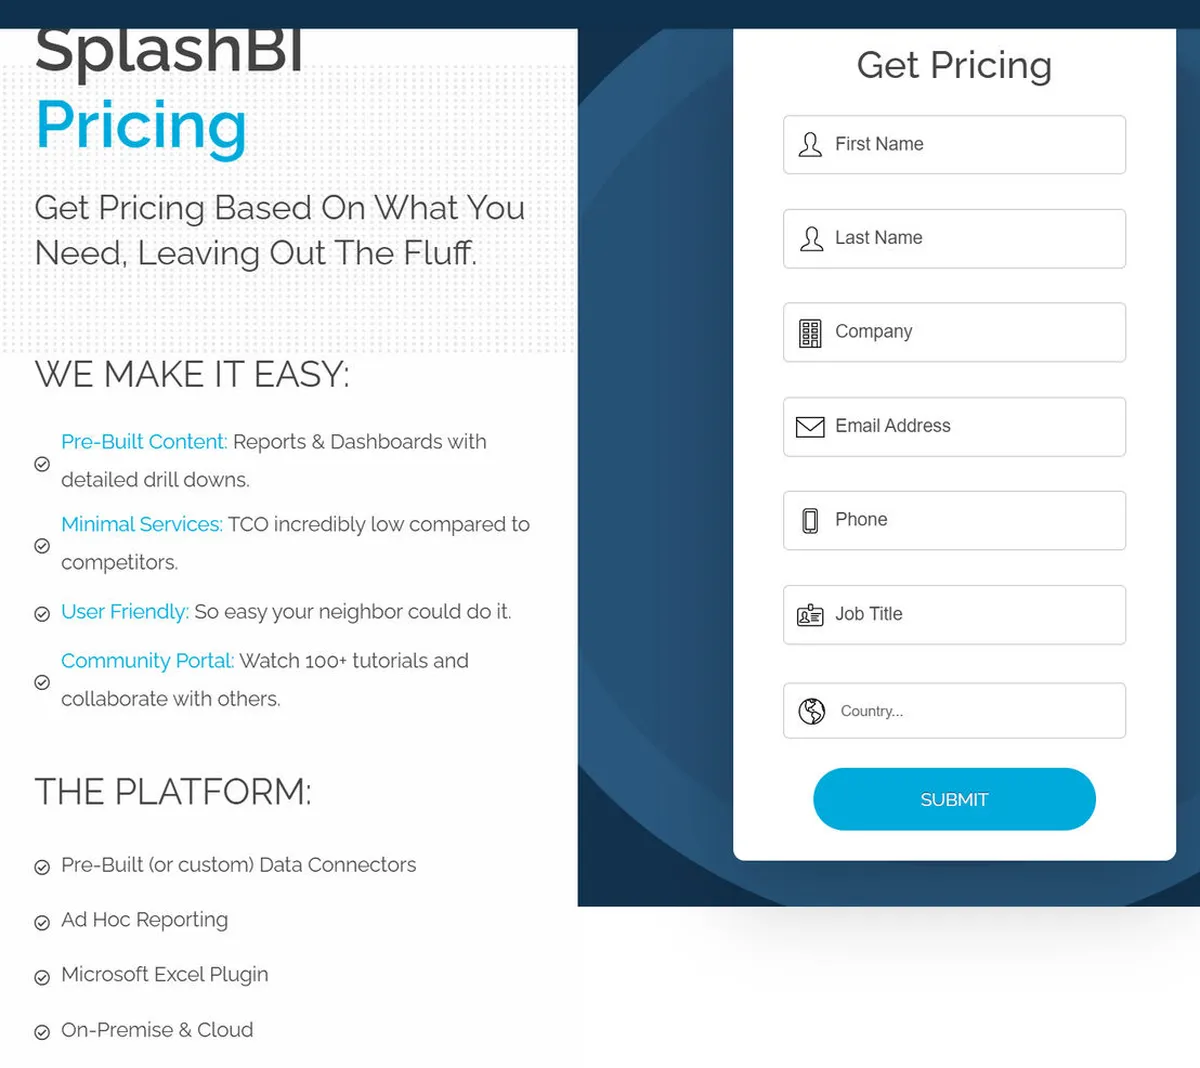 SplashBI Pricing Plan